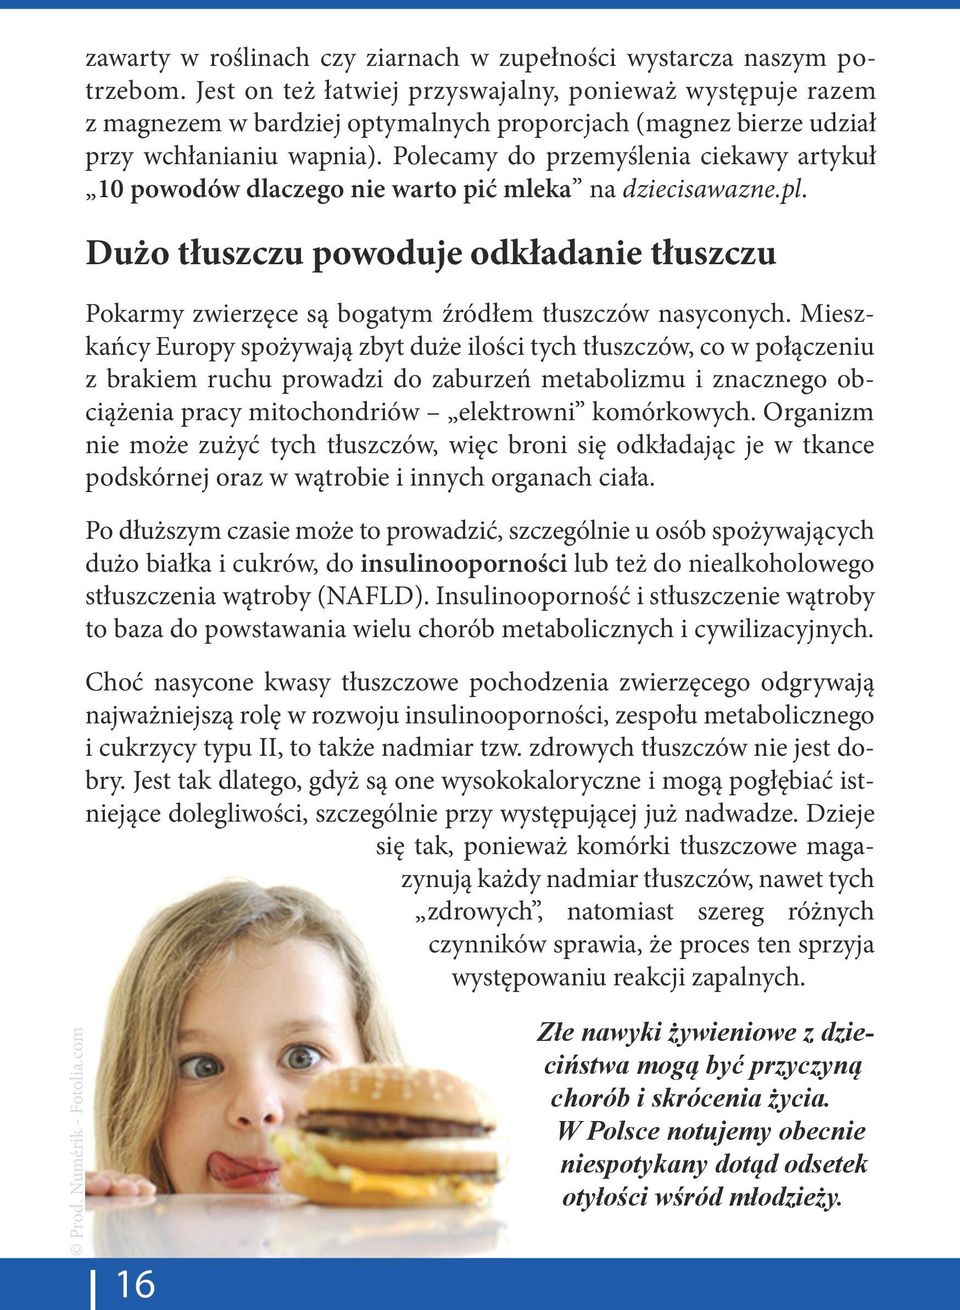 Polecamy do przemyślenia ciekawy artykuł 10 powodów dlaczego nie warto pić mleka na dziecisawazne.pl.